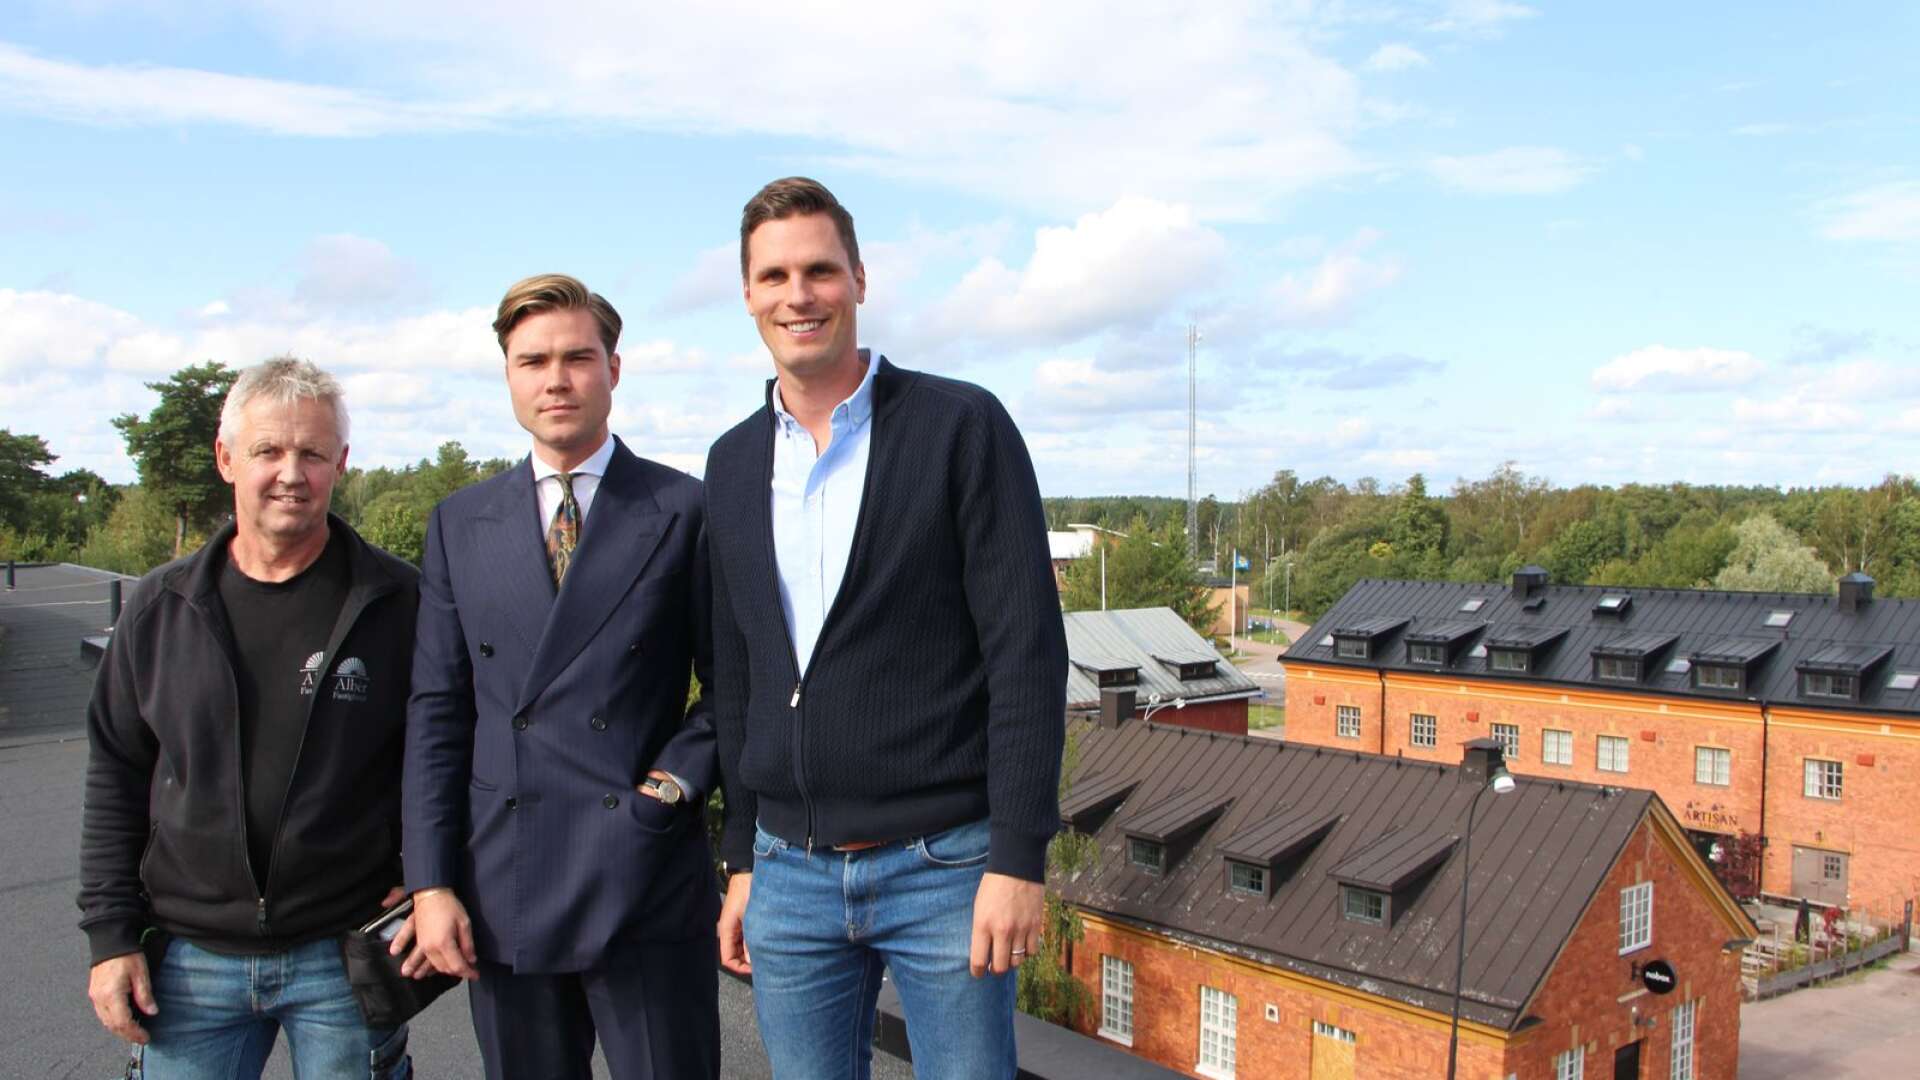 Albèr fastigheter har utökat sitt fastighetsbestånd. På bilden ses byggchefen Torbjörn Hillerström samt delägarna Filip Eriksson och David Eriksson.